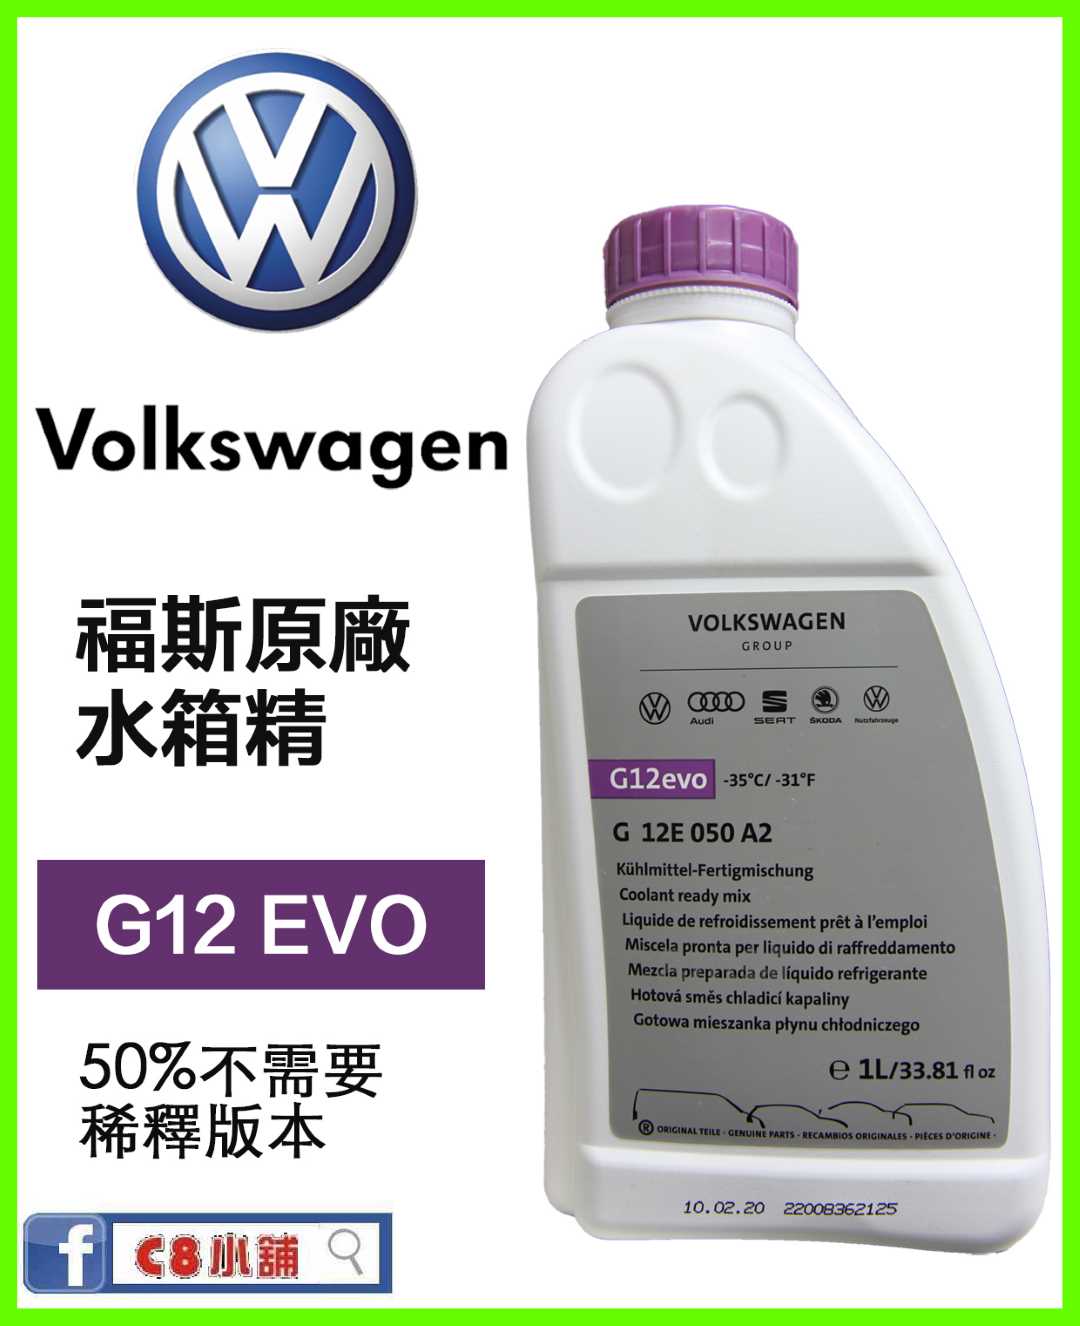 G12evo G12 VW Kühlmittel Fertigmischung Golf Volkswagen 12E 050 in